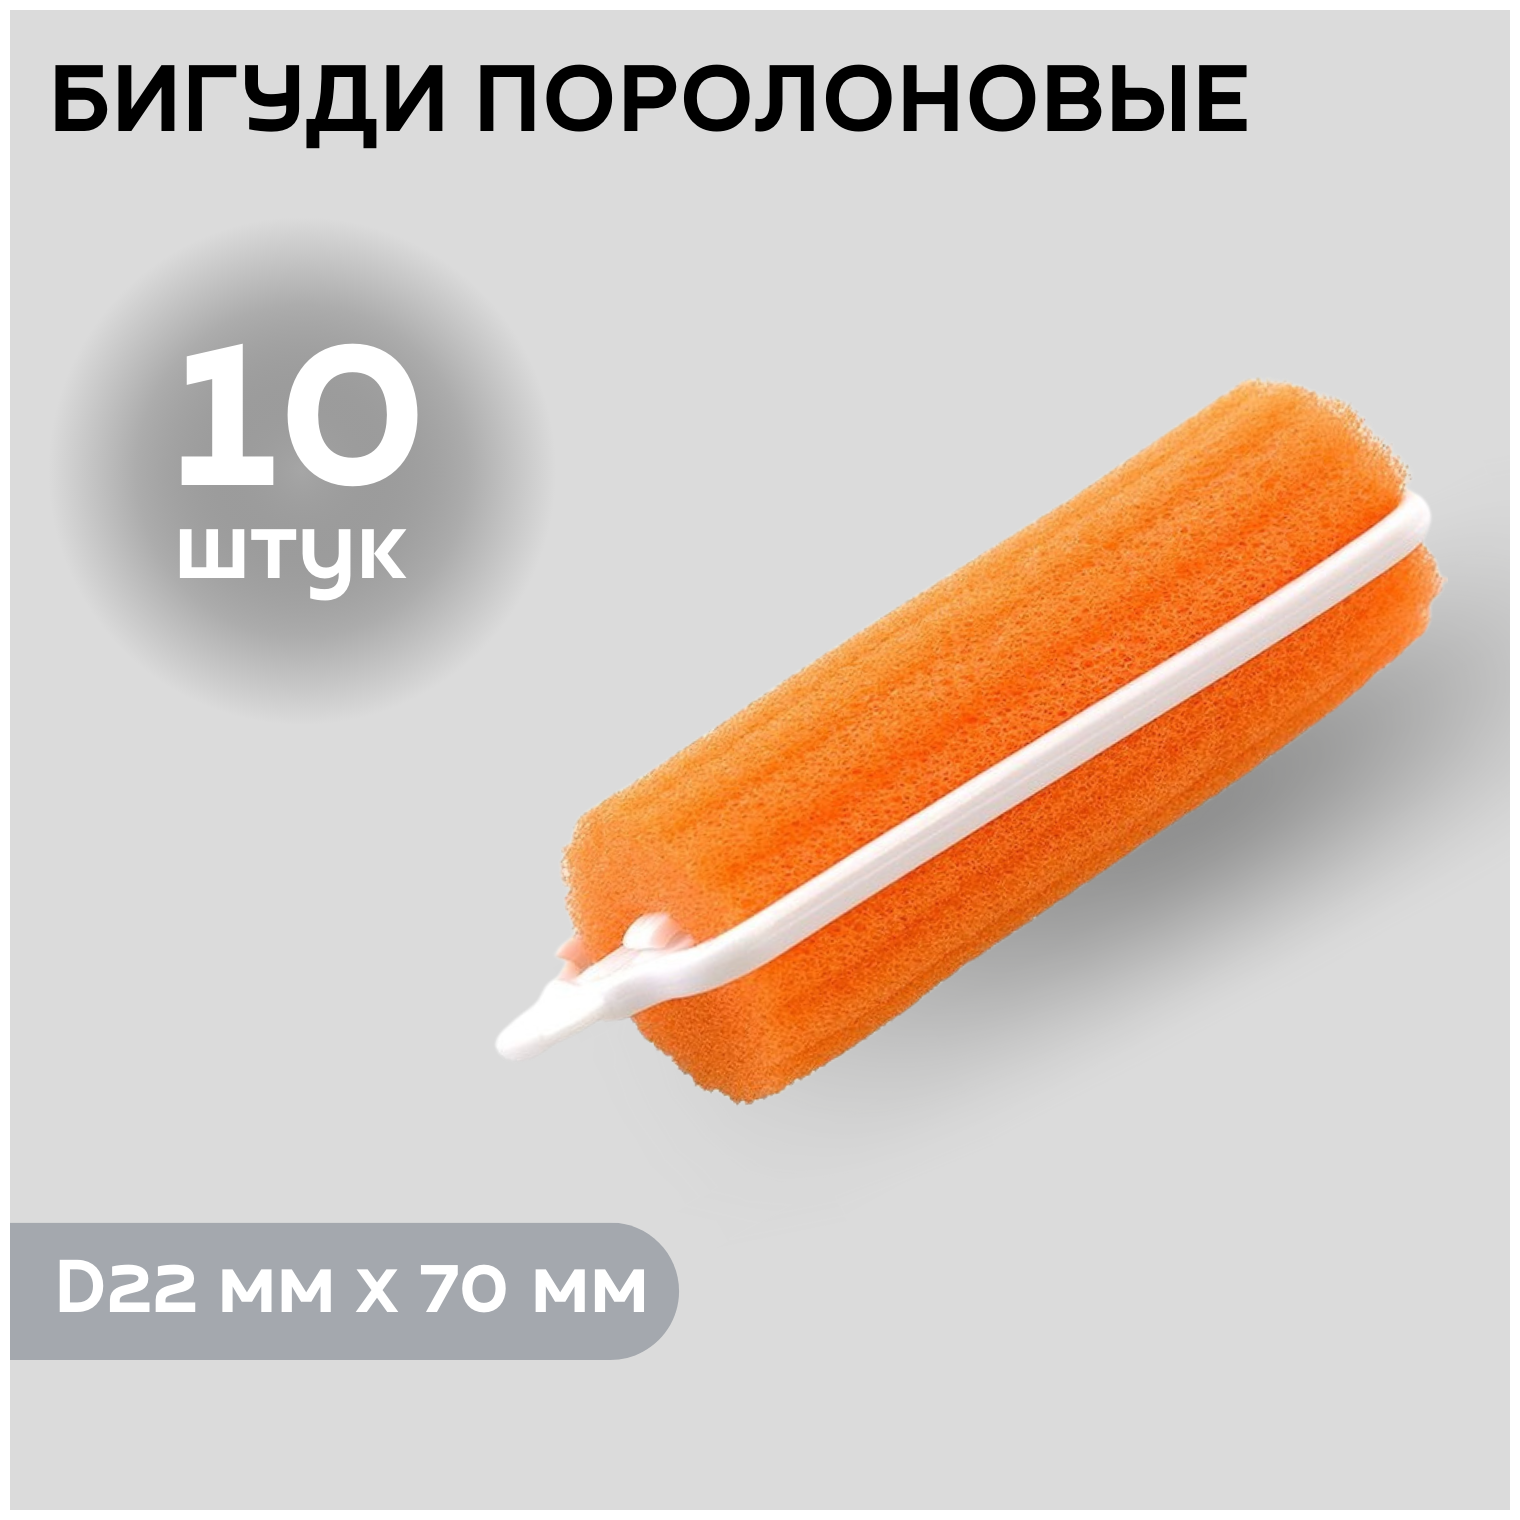 DEWAL BEAUTY Бигуди поролоновые DBP22, оранжевые, d 22 мм x 70 мм, 10 шт.